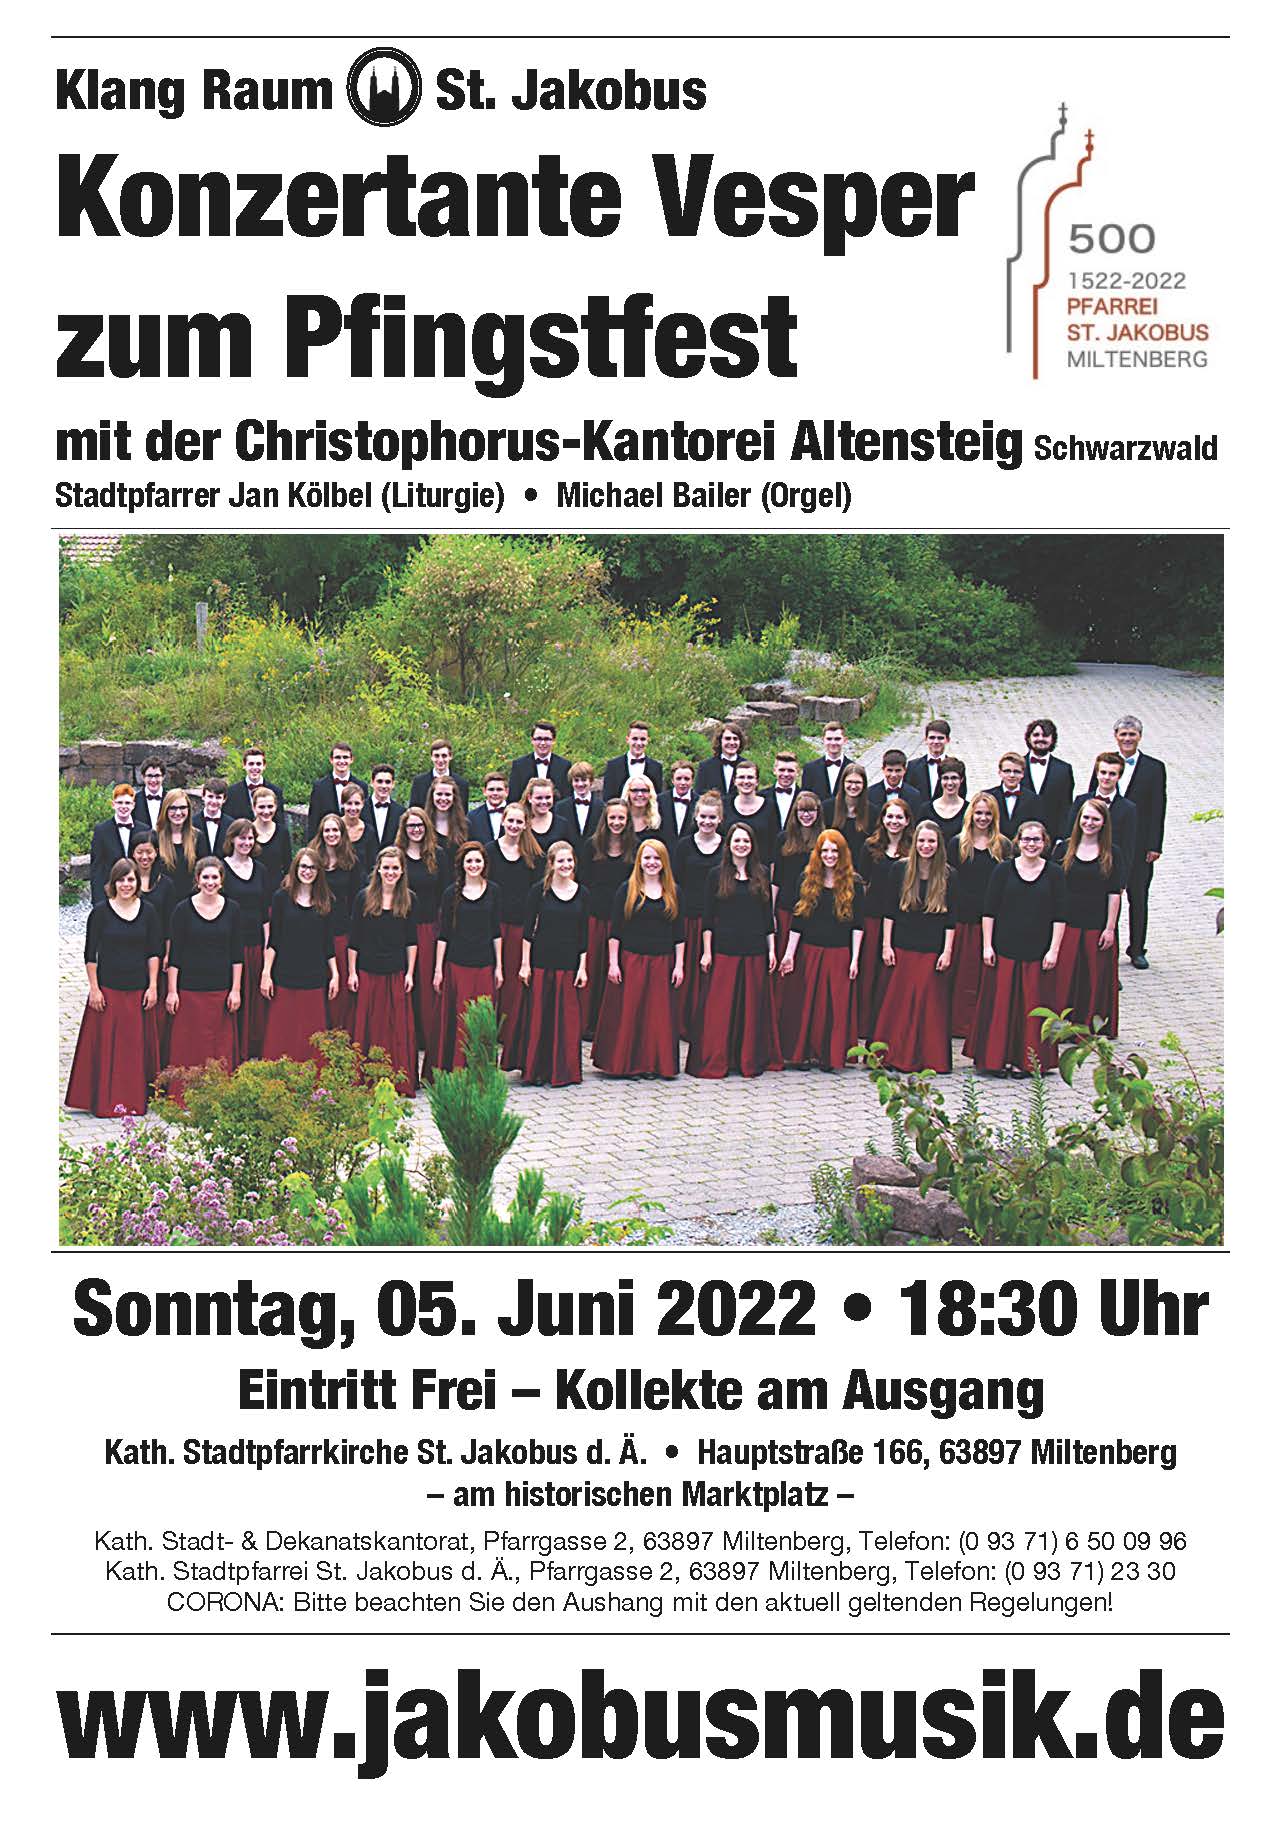 Konzertante Vesper zum Pfingstfest am 05. Juni 2022 mit der Christophorus-Kantorei Altensteig